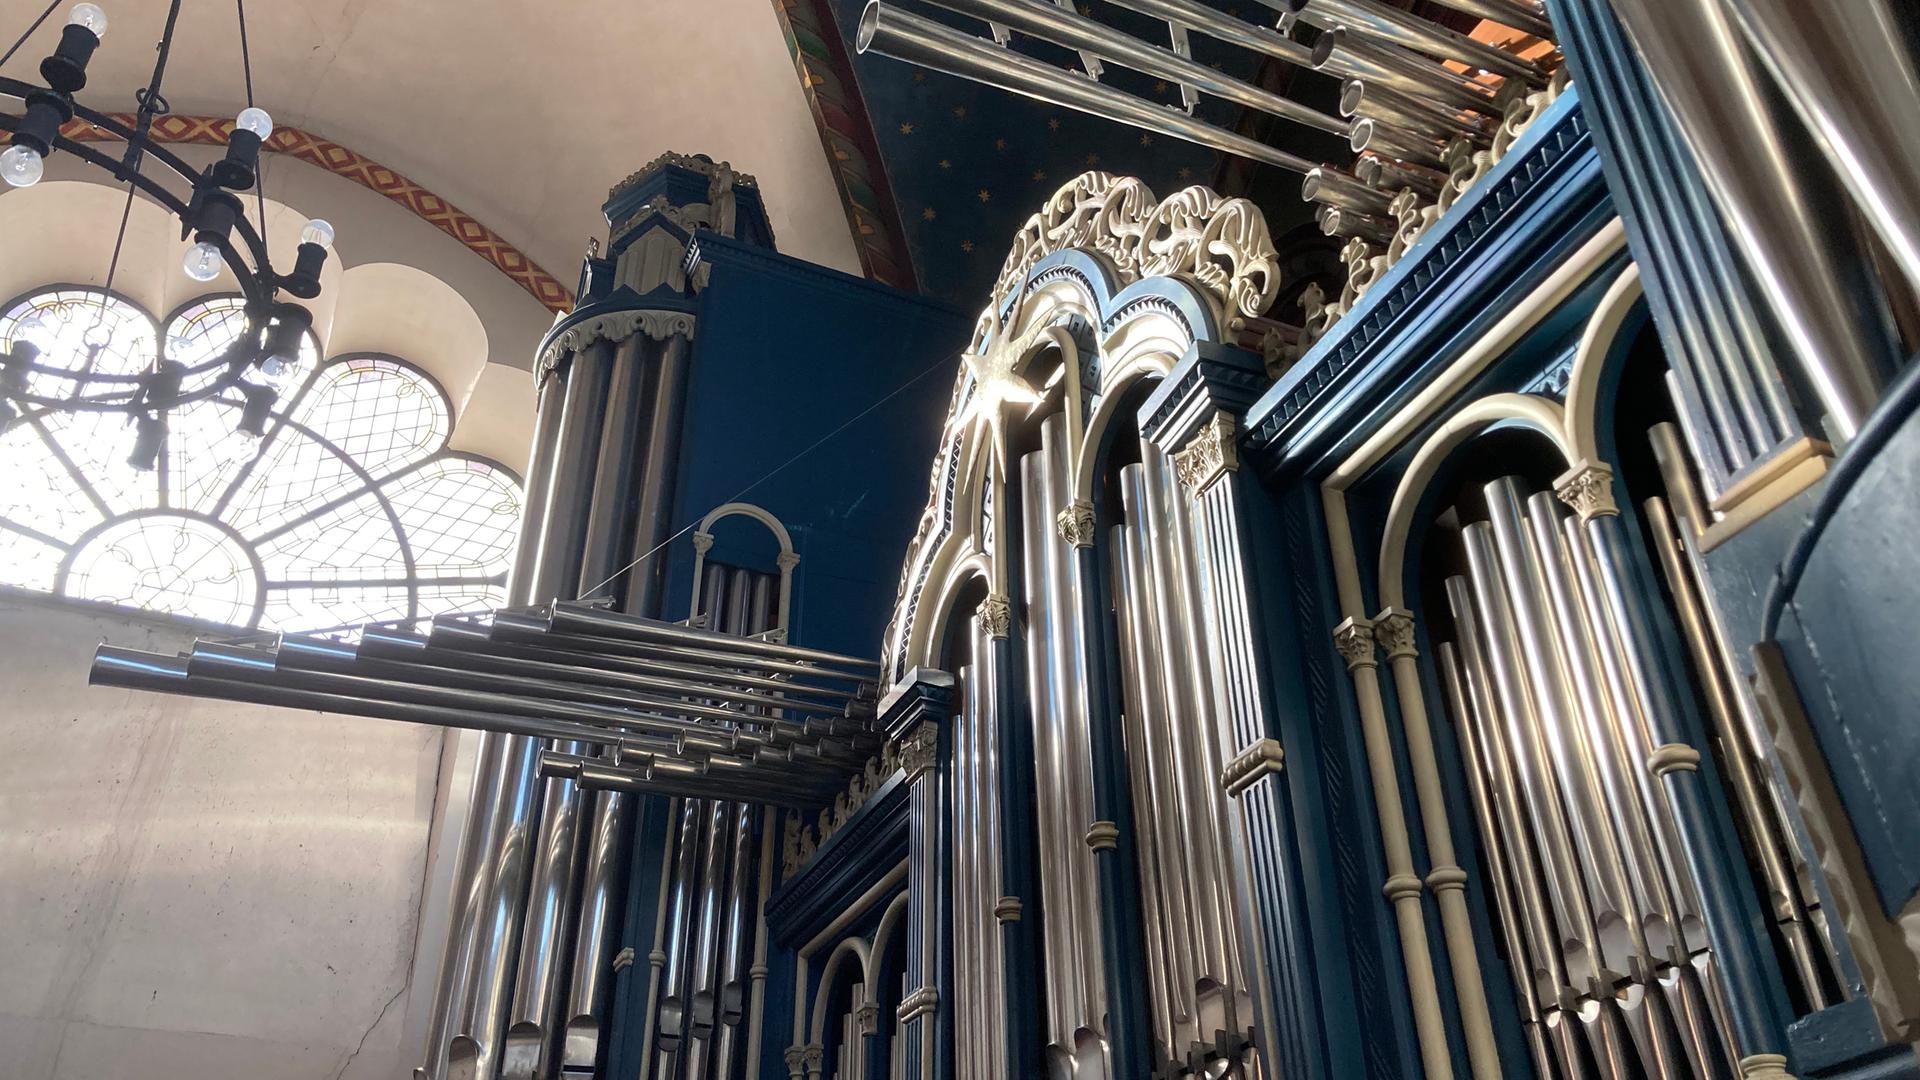 Auf dem Bild ist eine imposante Orgel zu sehen. 